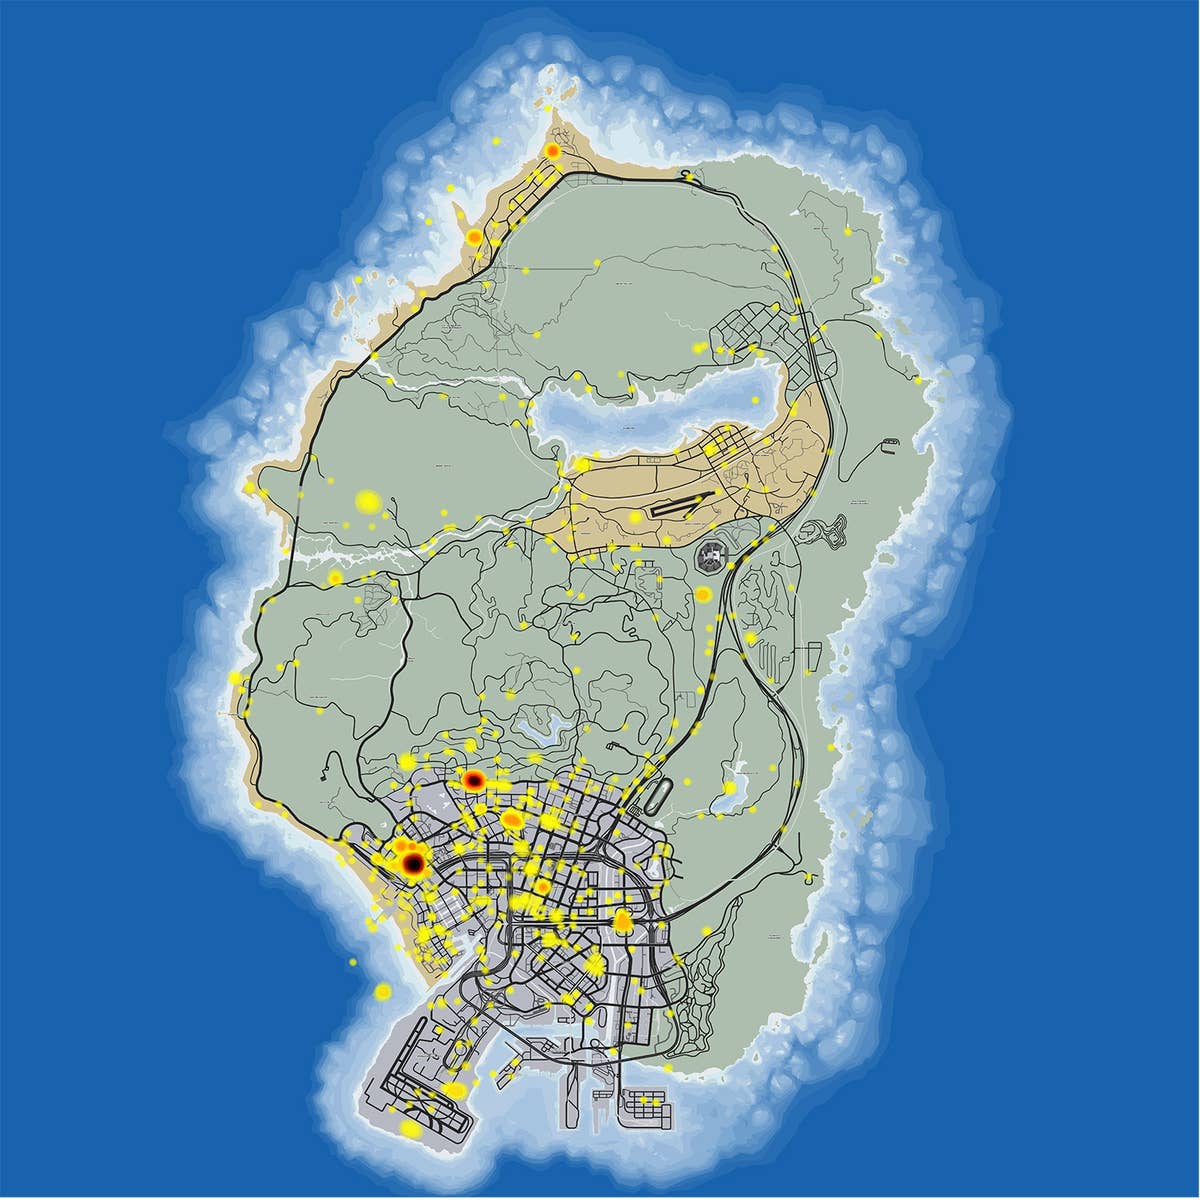 gta 5 map comparison to gta san andreas